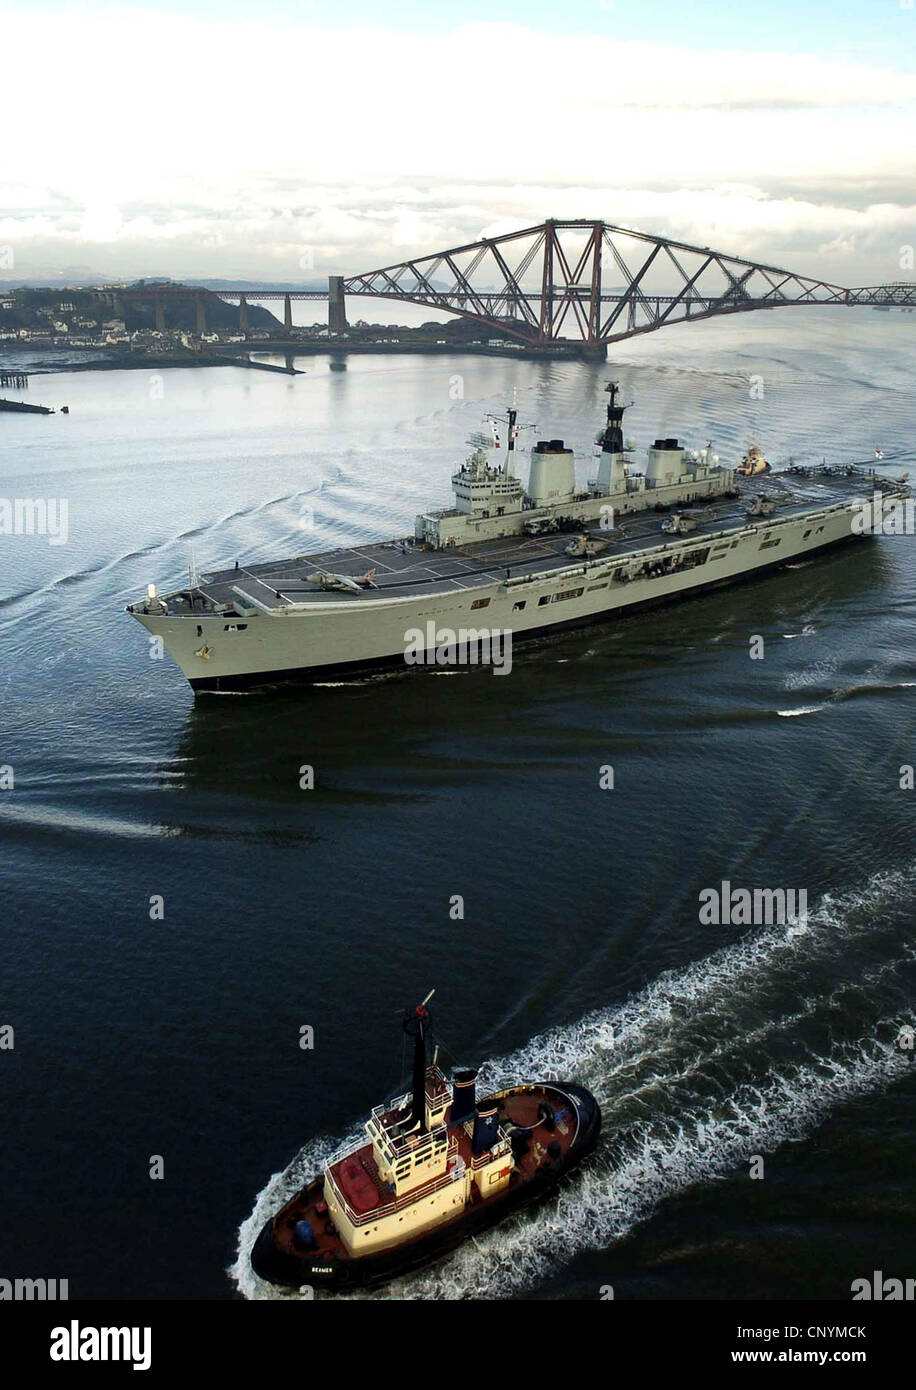 Flugzeugträger der HMS Ark Royal, die unter die vierte Schiene Brücke auf  dem Weg nach Rosyth Dock Yard Stockfotografie - Alamy